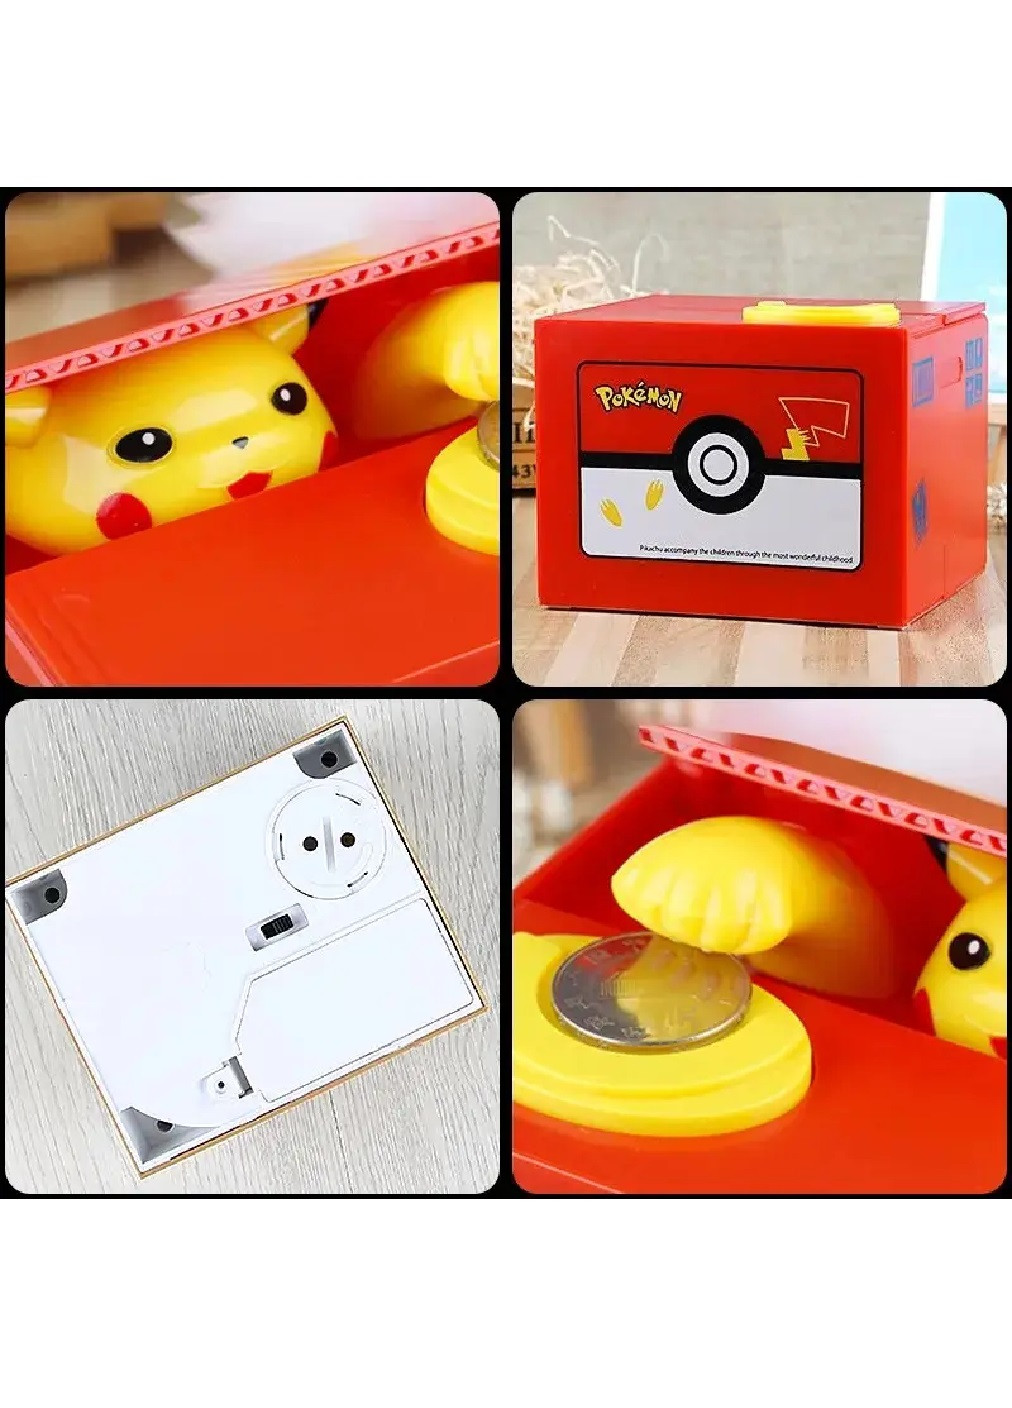 Дитяча інтерактивна розвиваюча навчальна коробка скринька скарбничка іграшка аксесуар 9x10x12 см (475382-Prob) Покемон Unbranded (266701514)